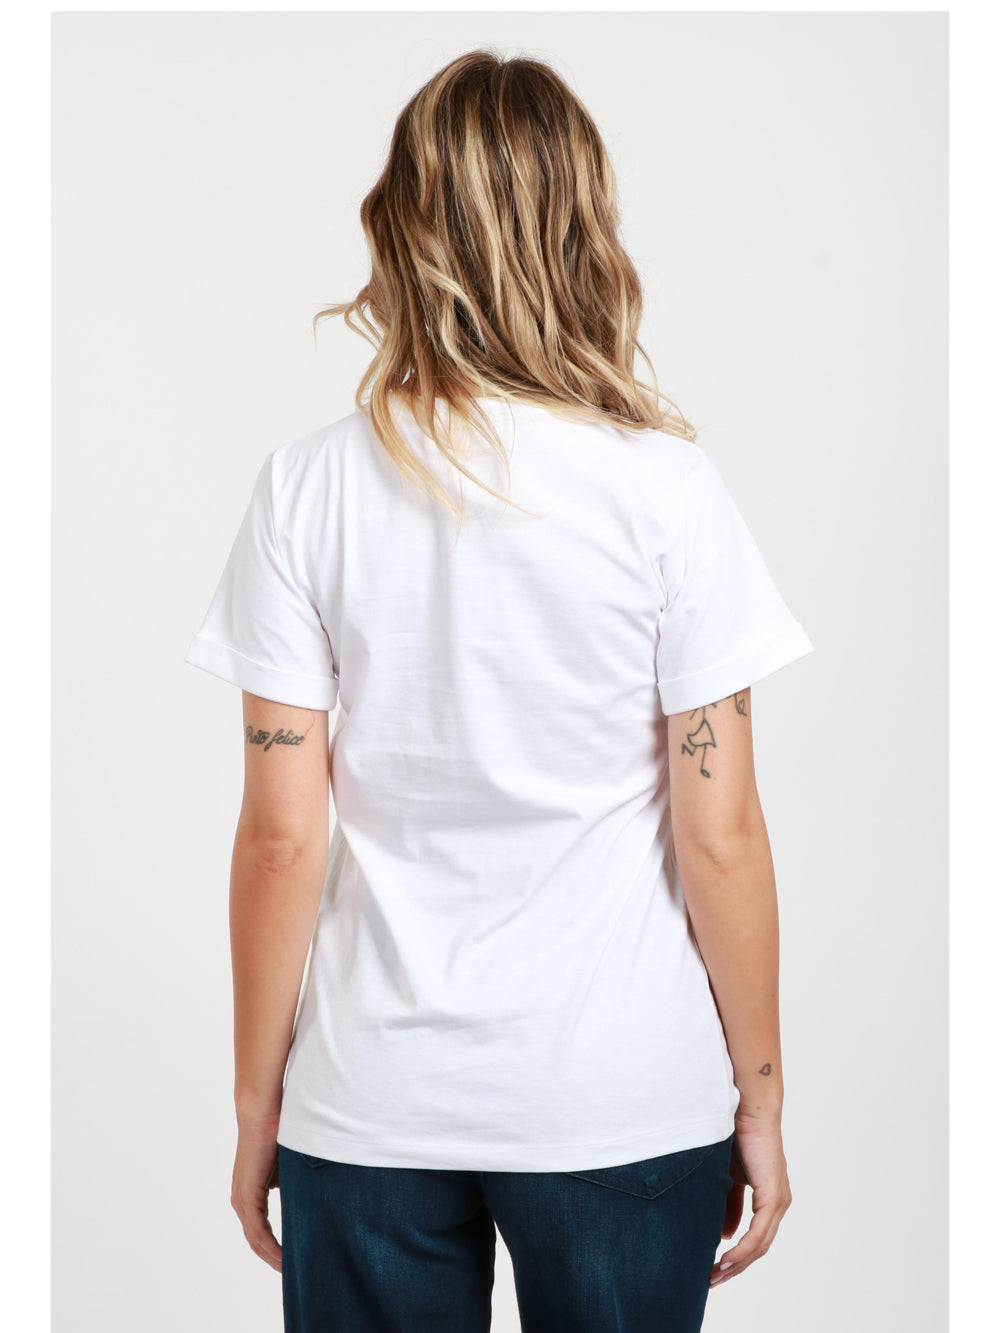 N°21 T-Shirt Girocollo in Cotone Bianca con Etichetta con Logo Bianco ottico